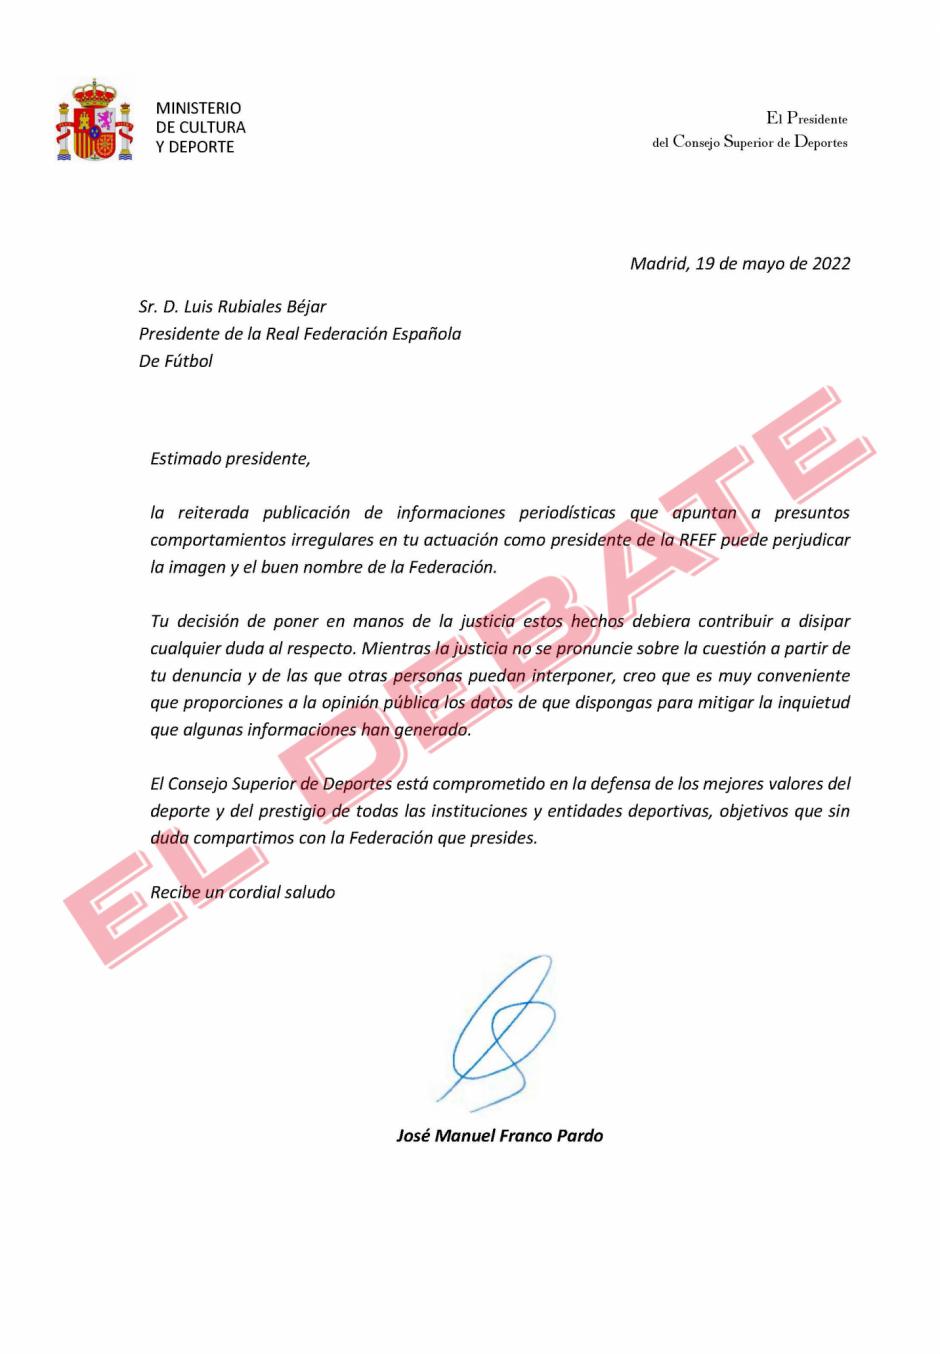 Carta del presidente del CSD, José Manuel Franco, a Luis Rubiales